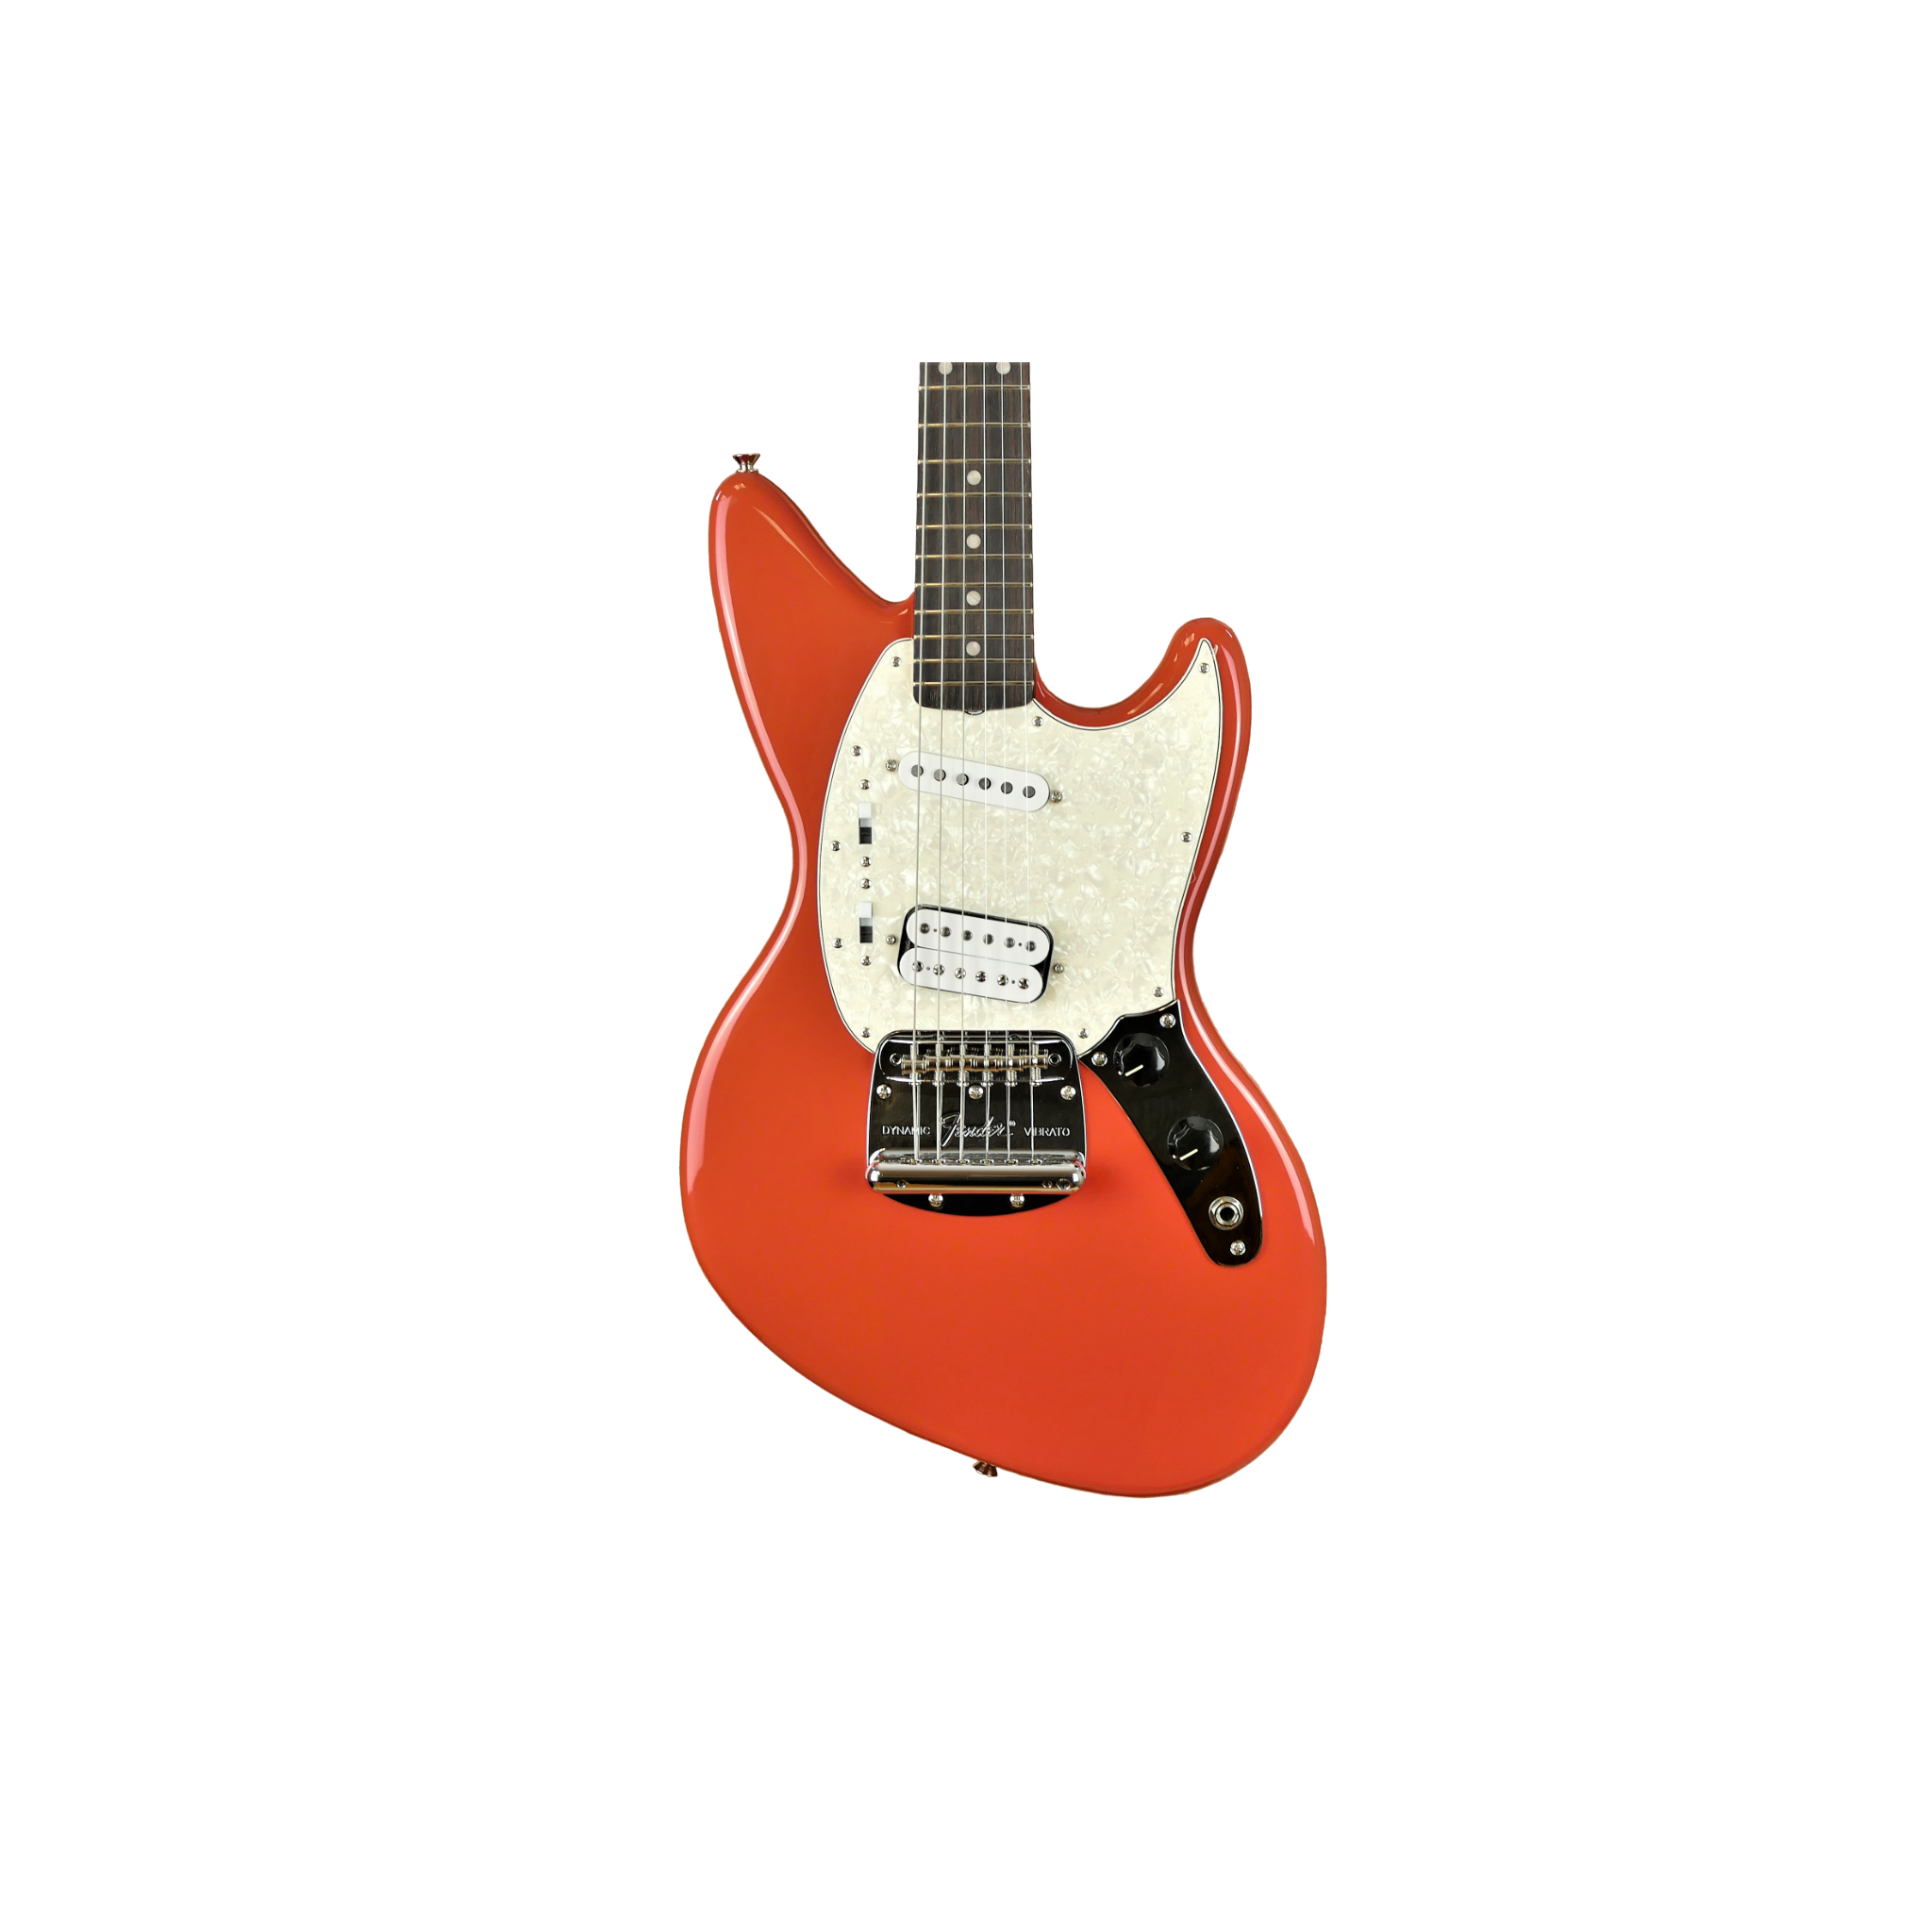 Fender Kurt Cobain Jag-Stang®, Rosewood Fingerboard, Fiesta Red